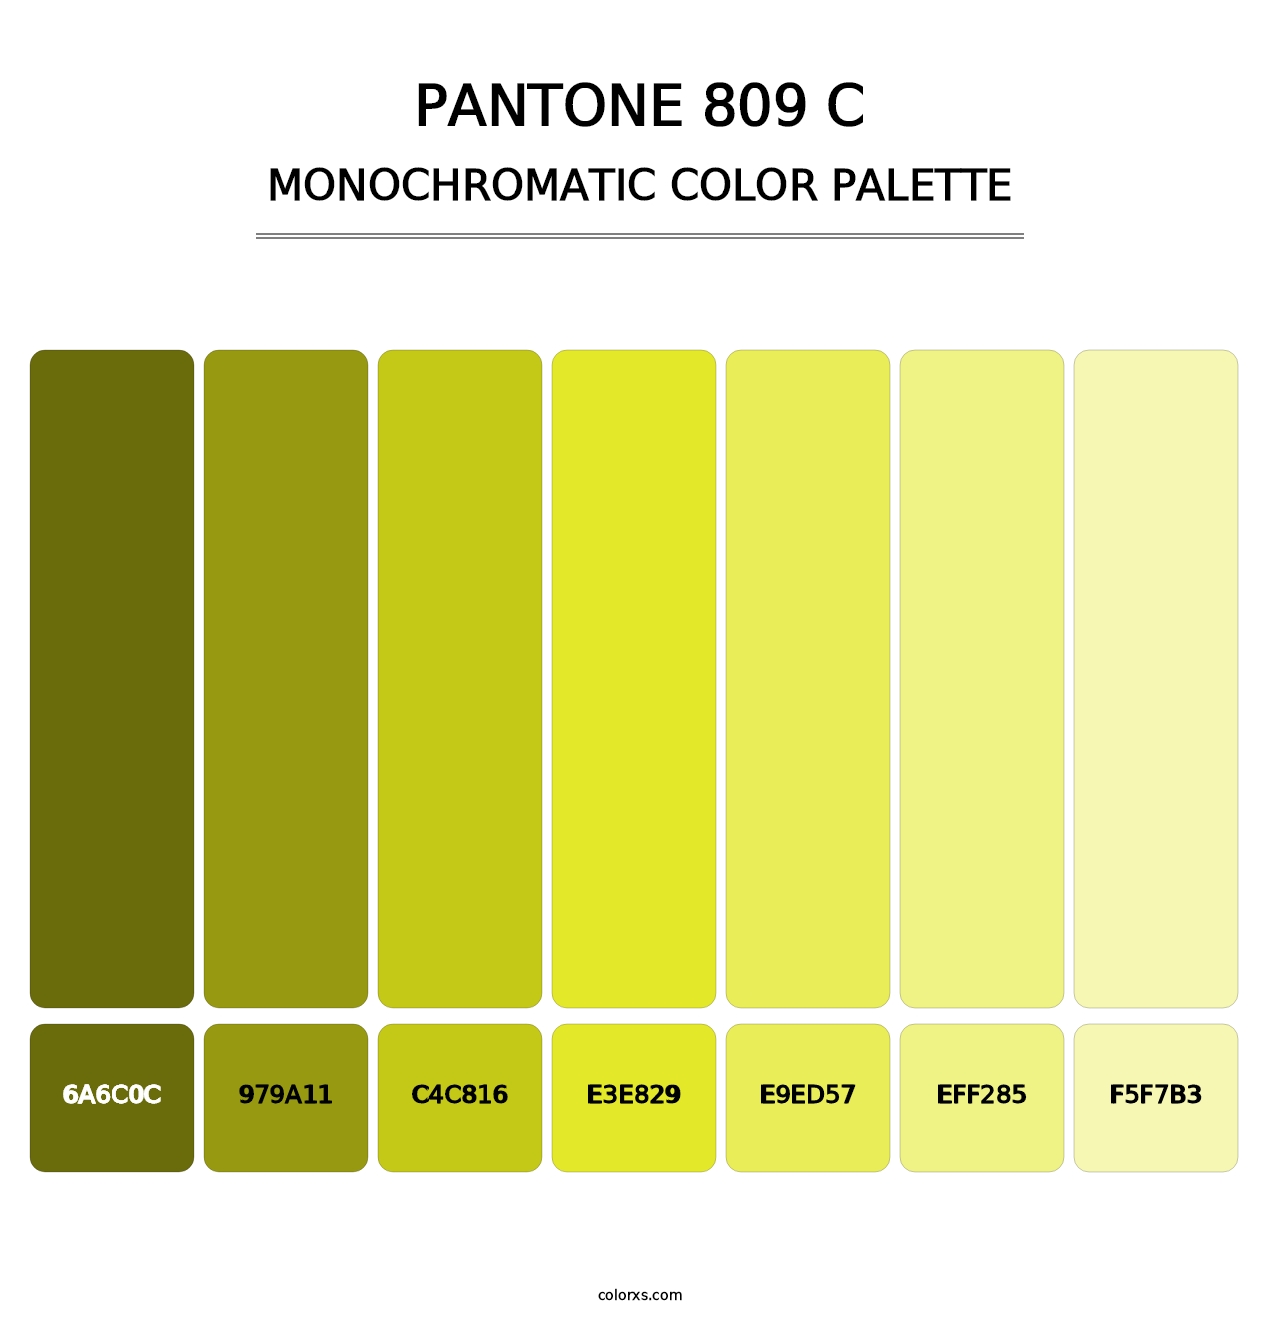 PANTONE 809 C - Monochromatic Color Palette